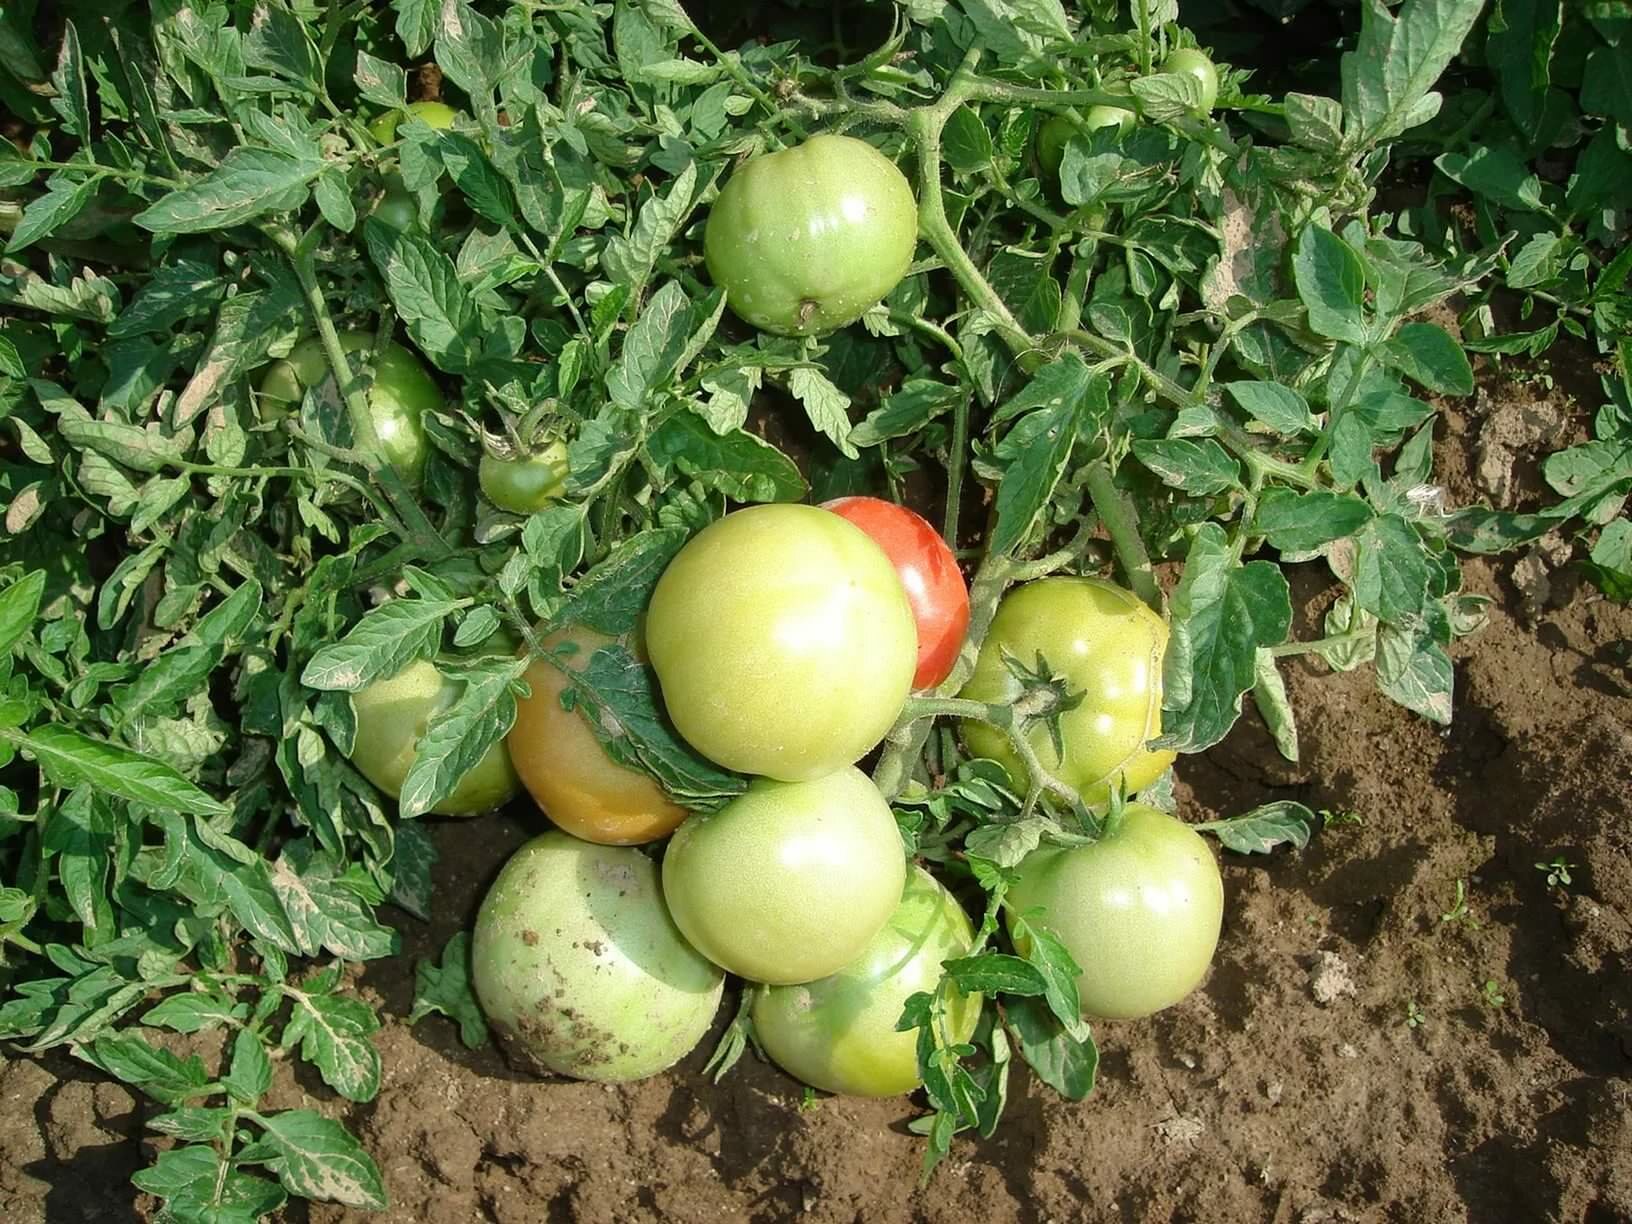 Разнообразие сортов позволяет подобрать томат под свои условия и требования